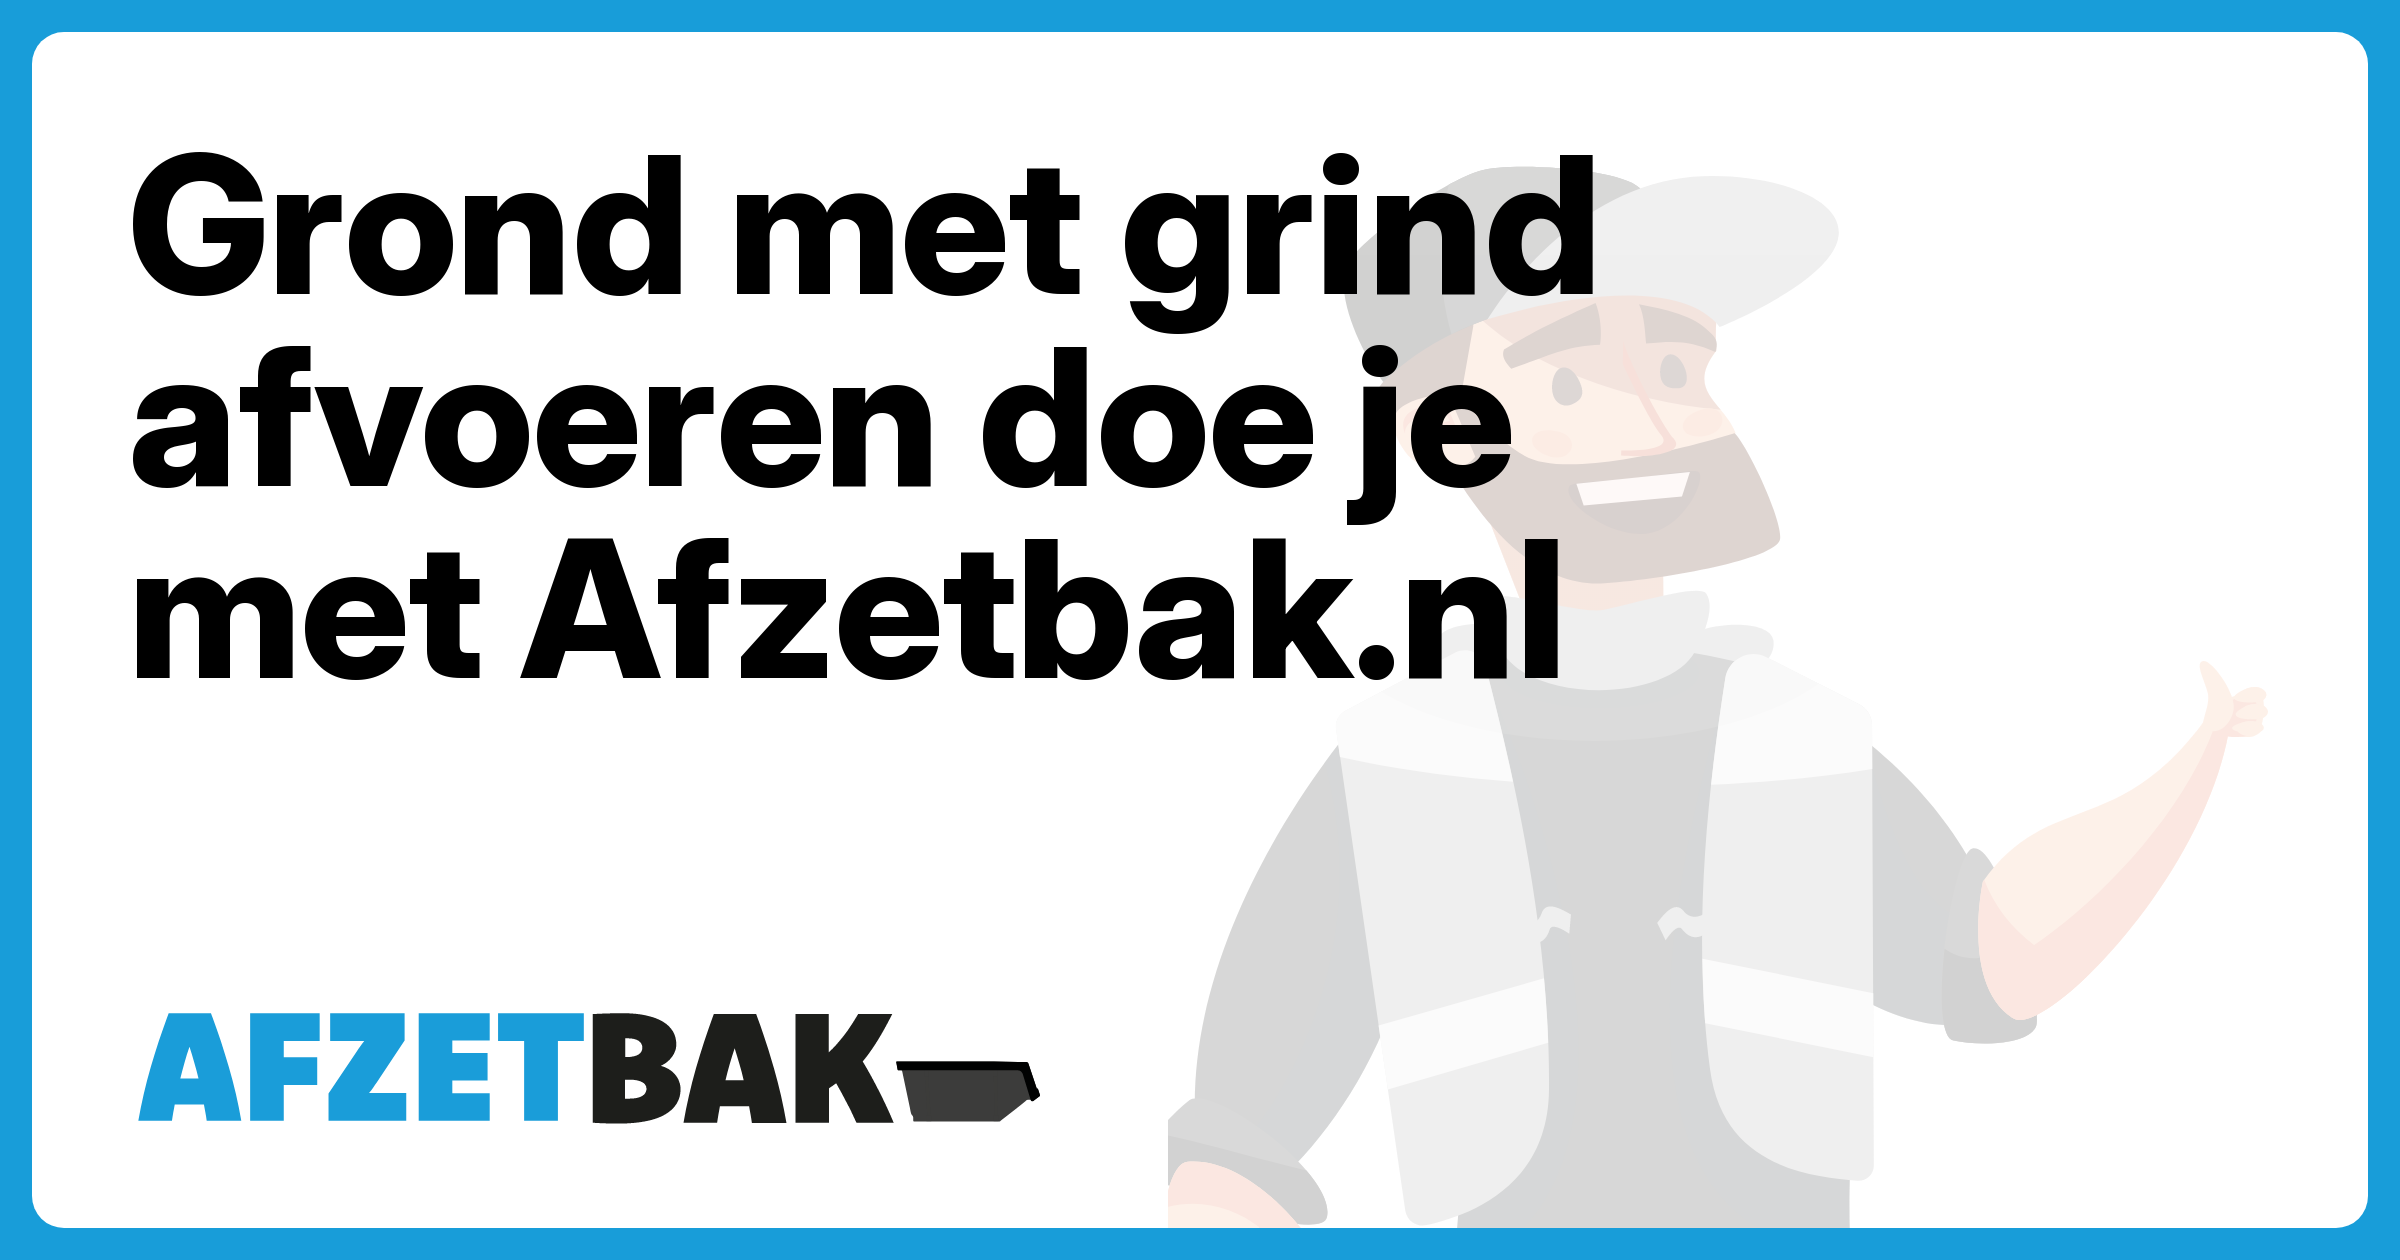 Grond met grind afvoeren doe je met Afzetbak.nl - Afzetbak.nl